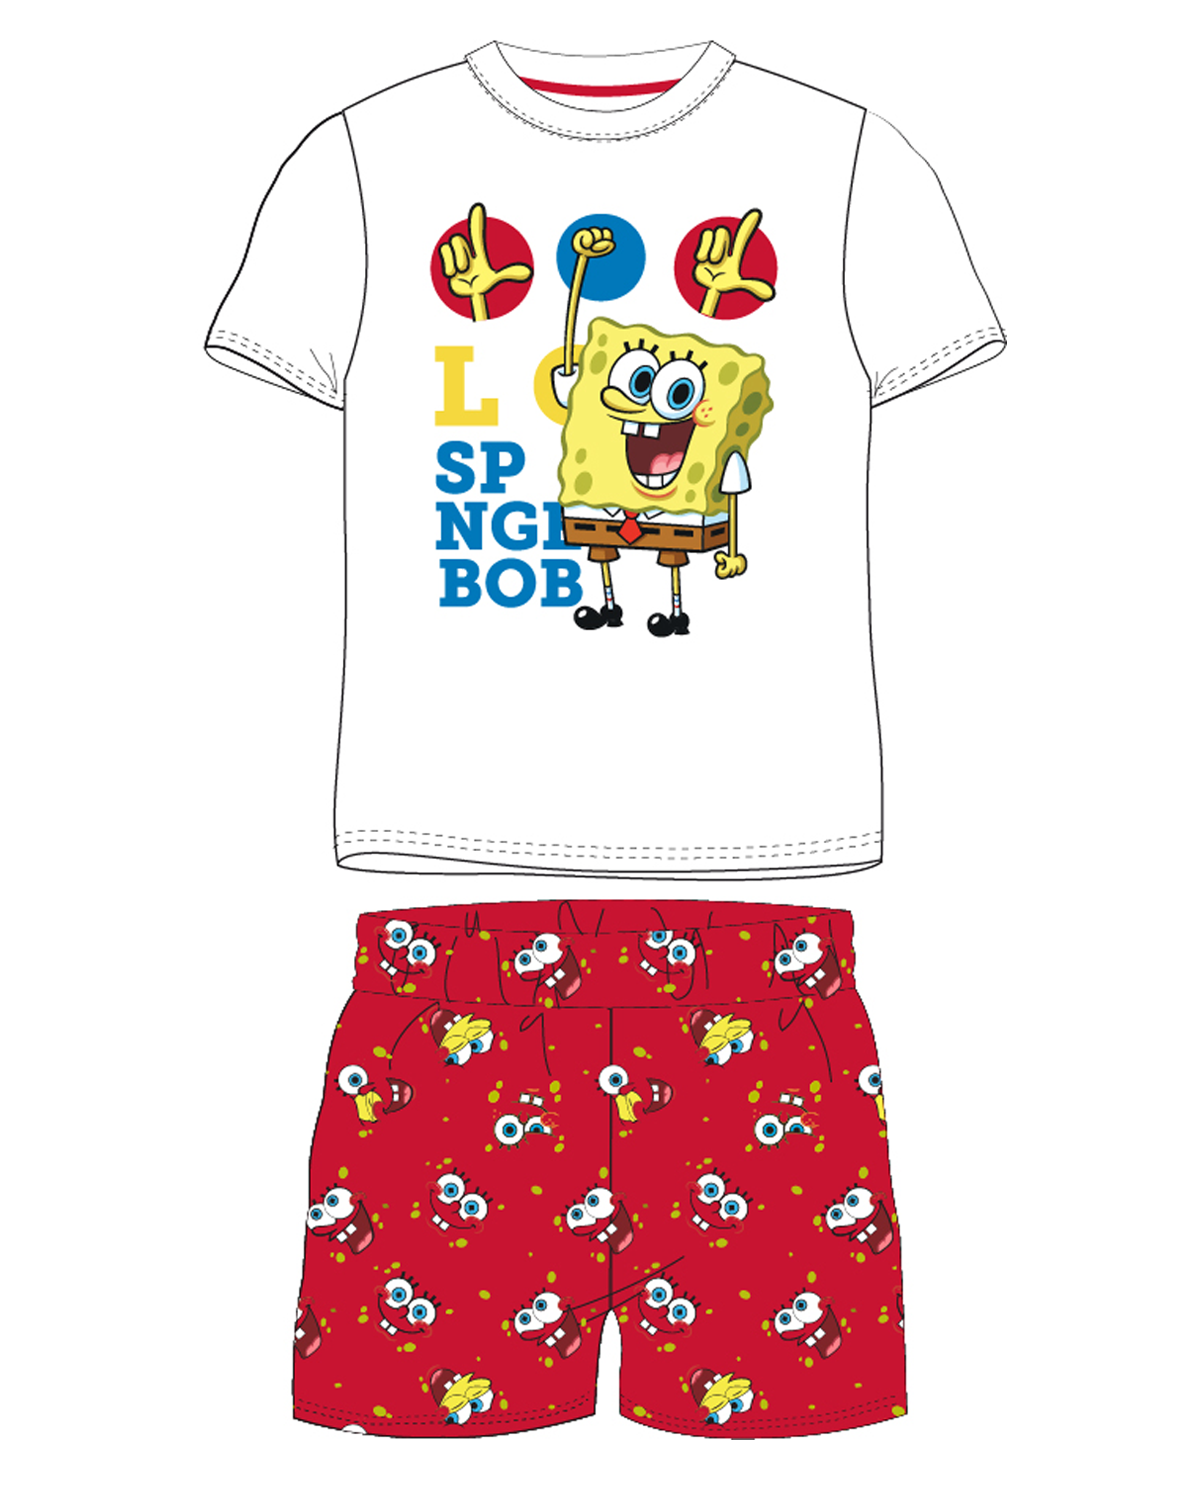 SpongeBob v kalhotách - licence Chlapecké pyžamo - SpongeBob v kalhotách 5204203W, bílá / červená Barva: Mix barev, Velikost: 116